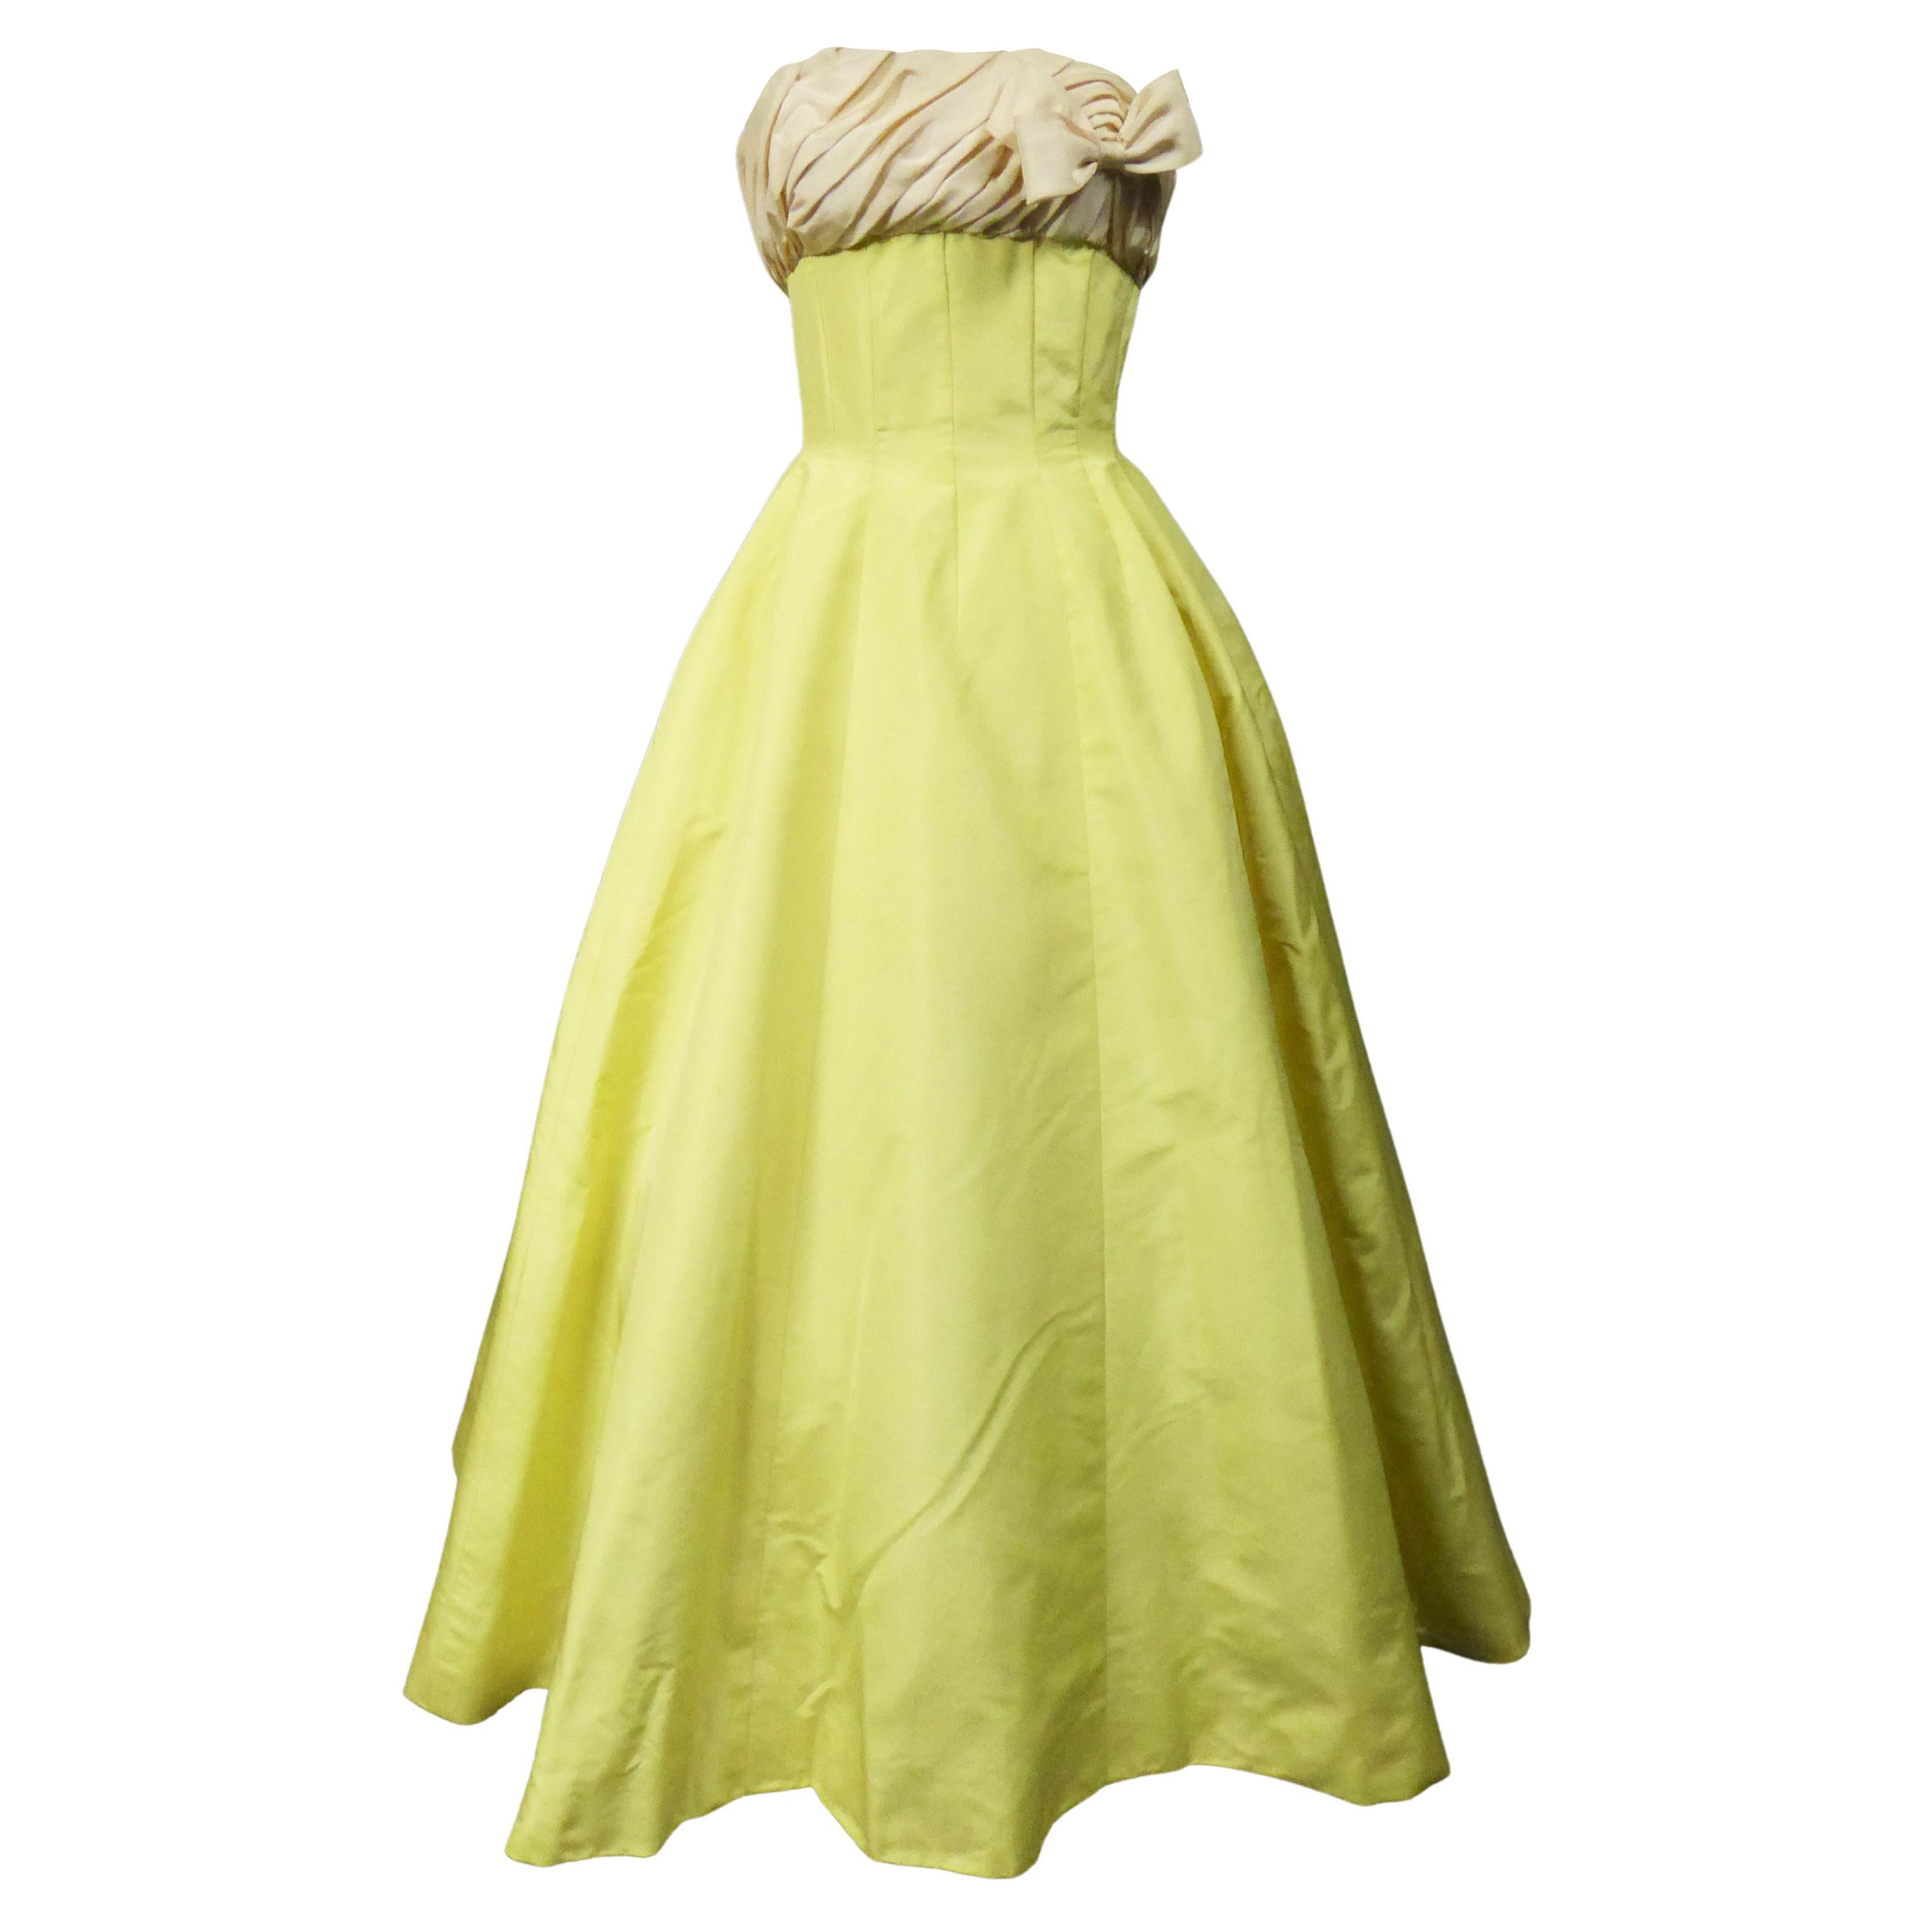 A Pierre Balmain Ottoman Silk Faille Couture Ball-Gown N° 83213 Paris Circa 1958 For Sale